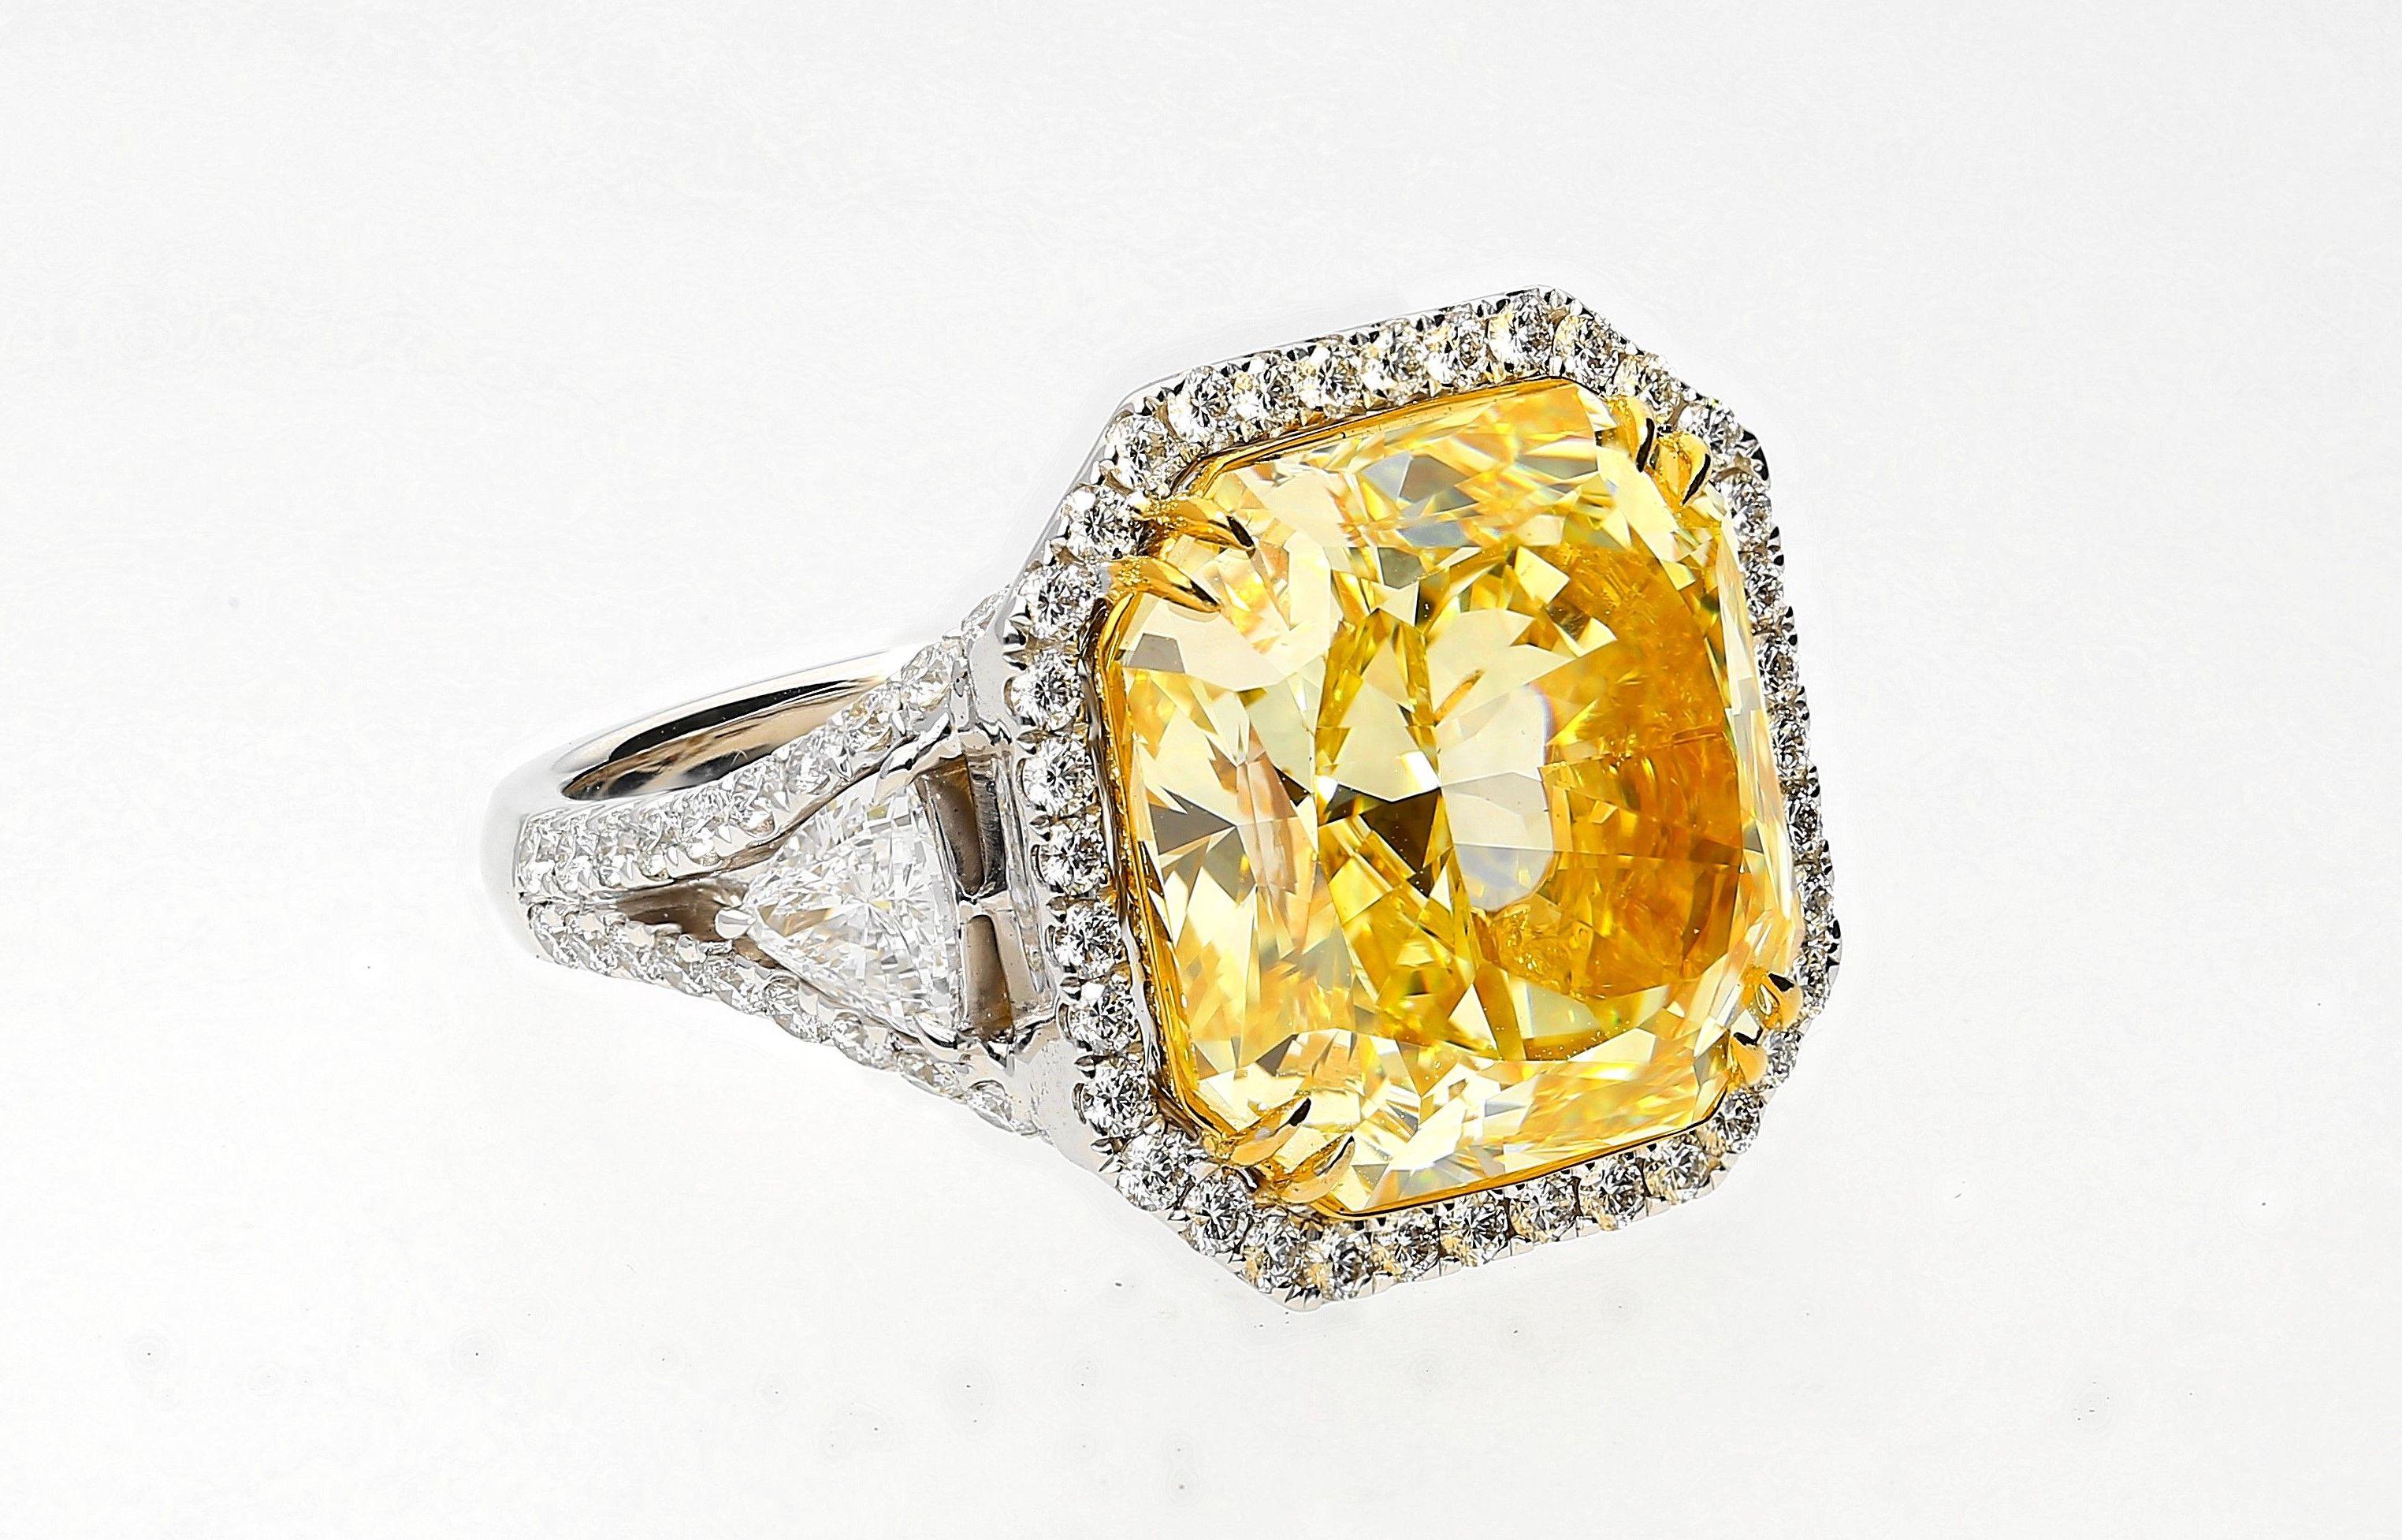 Mit einem prächtigen 13,14 Karat Radiant-Cut Fancy Intense Yellow Colored Diamond von VVS1 Clarity in der Mitte, akzentuiert durch weitere fast 2 Karat weißer Diamanten und gefasst in üppigem 18 Karat Weißgold, ist dieses Meisterwerk der Inbegriff